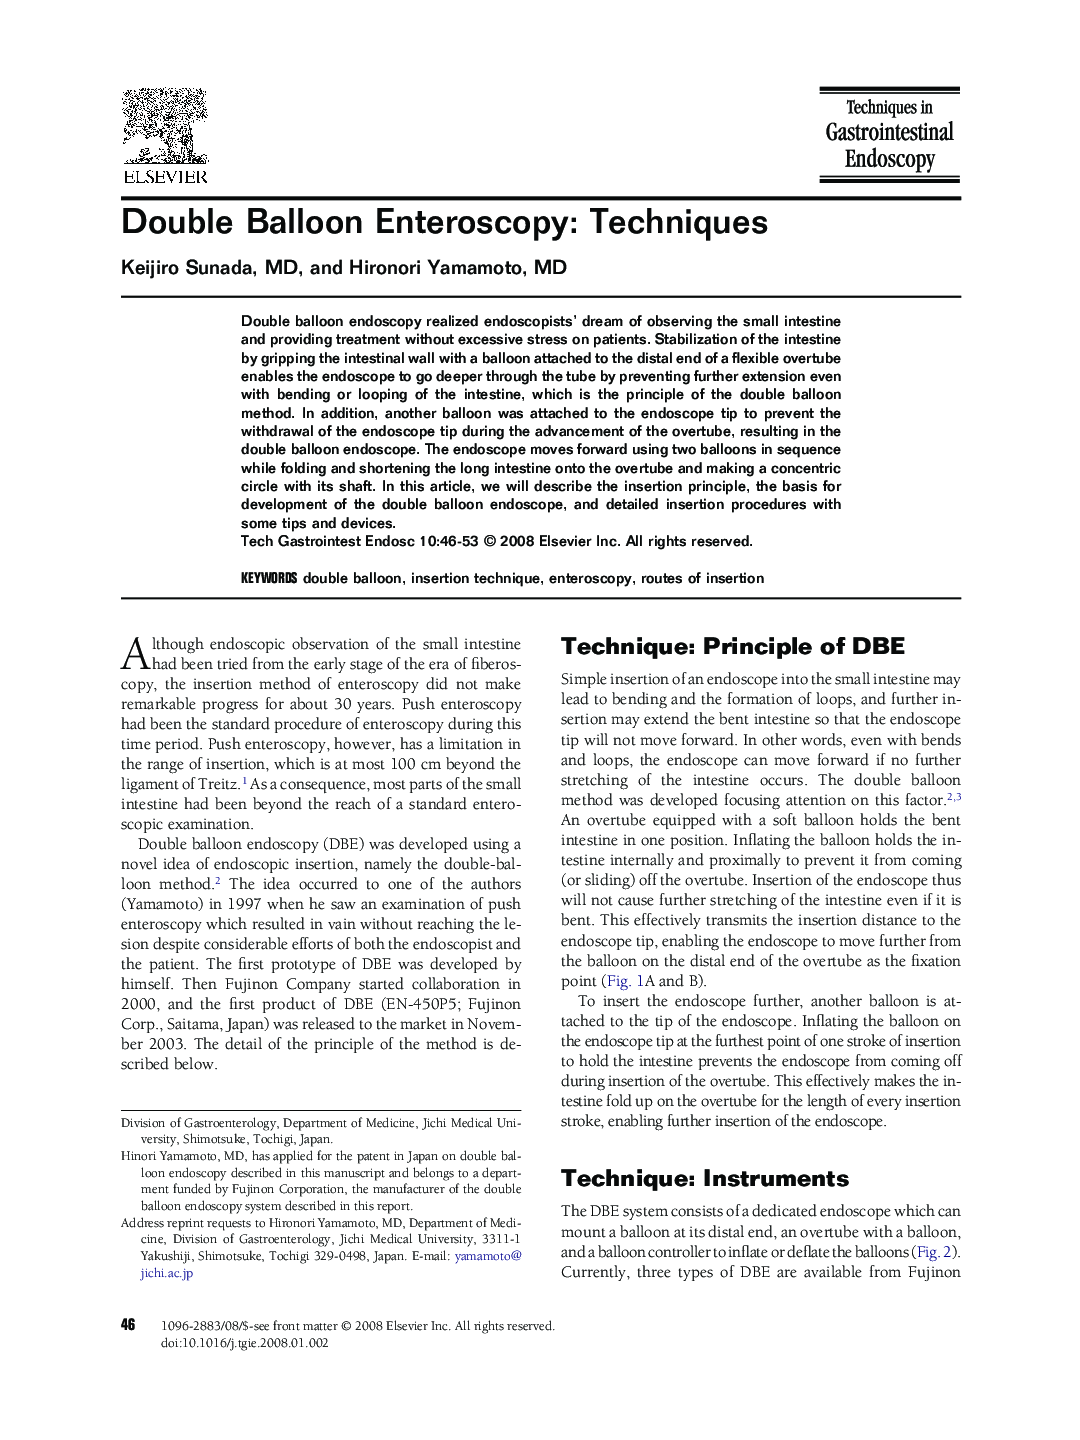 Double Balloon Enteroscopy: Techniques 